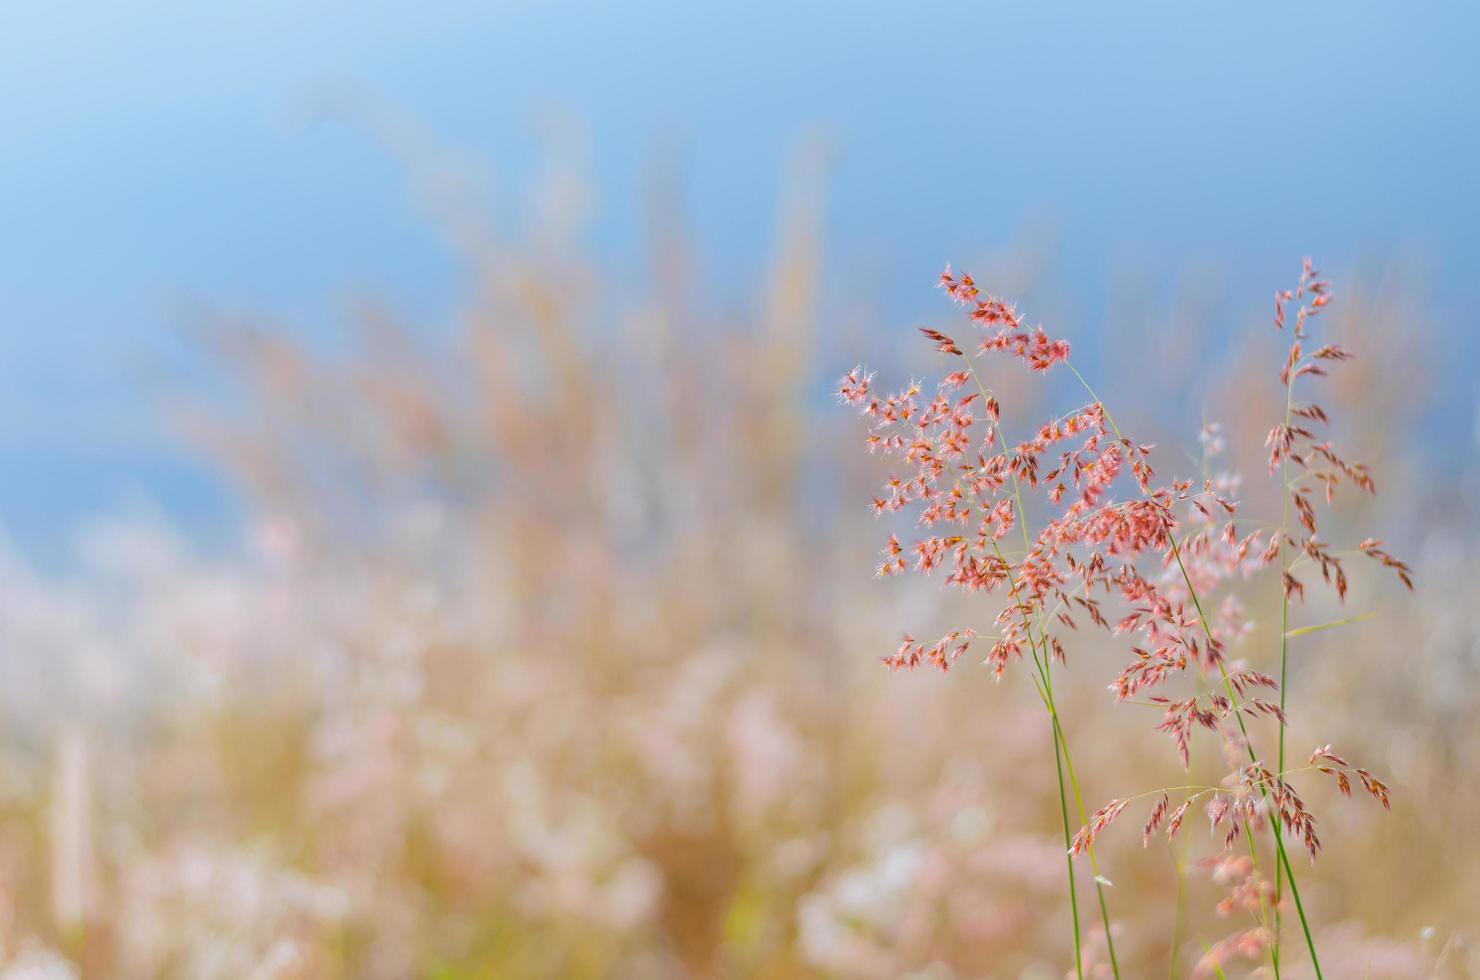 foco borroso de hierba natal rosa con fondo borroso de color marrón y azul de hojas secas y agua del lago. foto